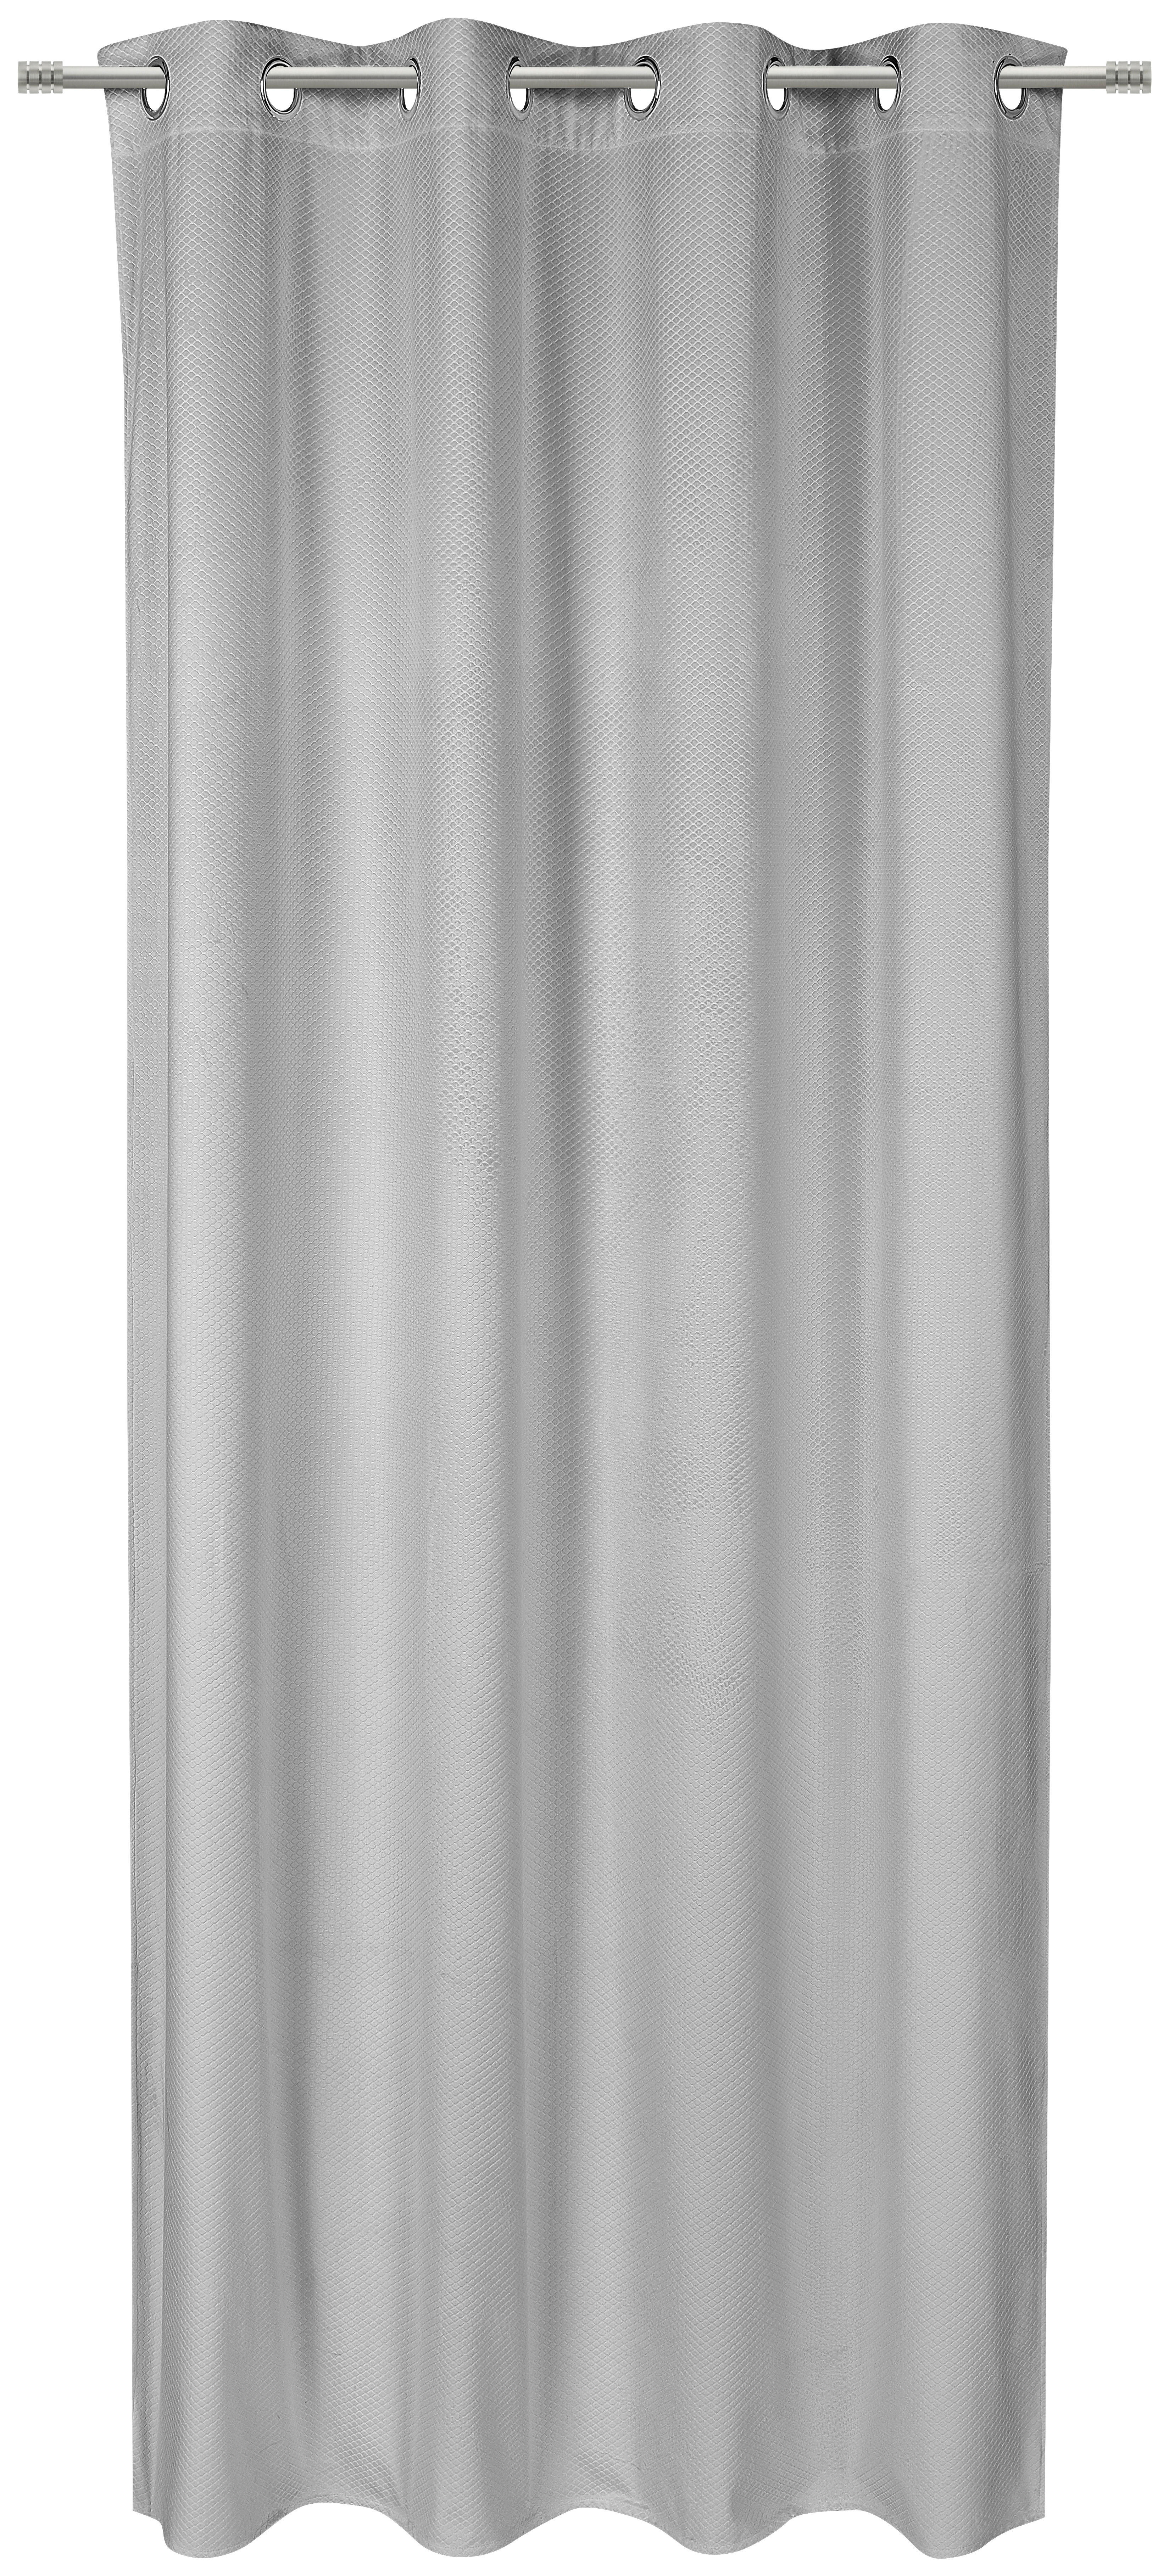 RINGLIS FÜGGÖNY Részben fényzáró  - Ezüst, Konventionell, Textil (140/245cm) - Esposa